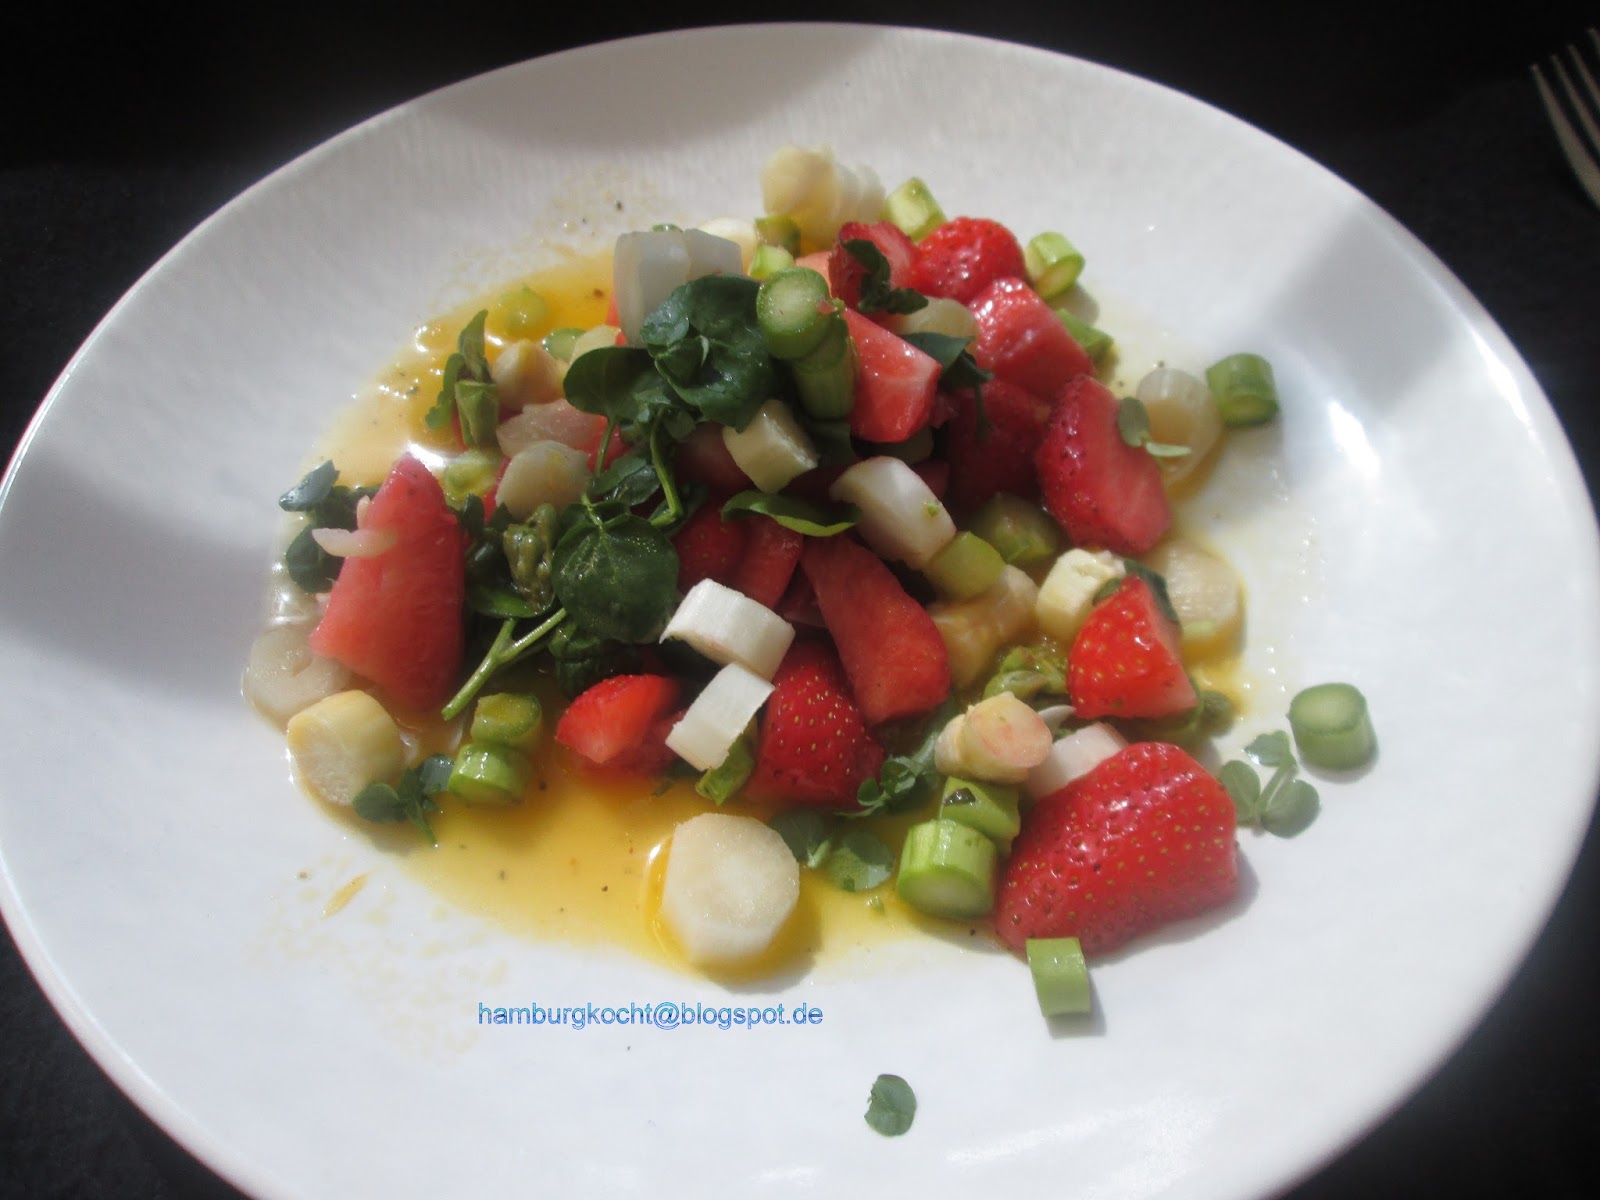 Hamburg kocht!: Spargelsalat mit Erdbeeren und Brunnenkresse